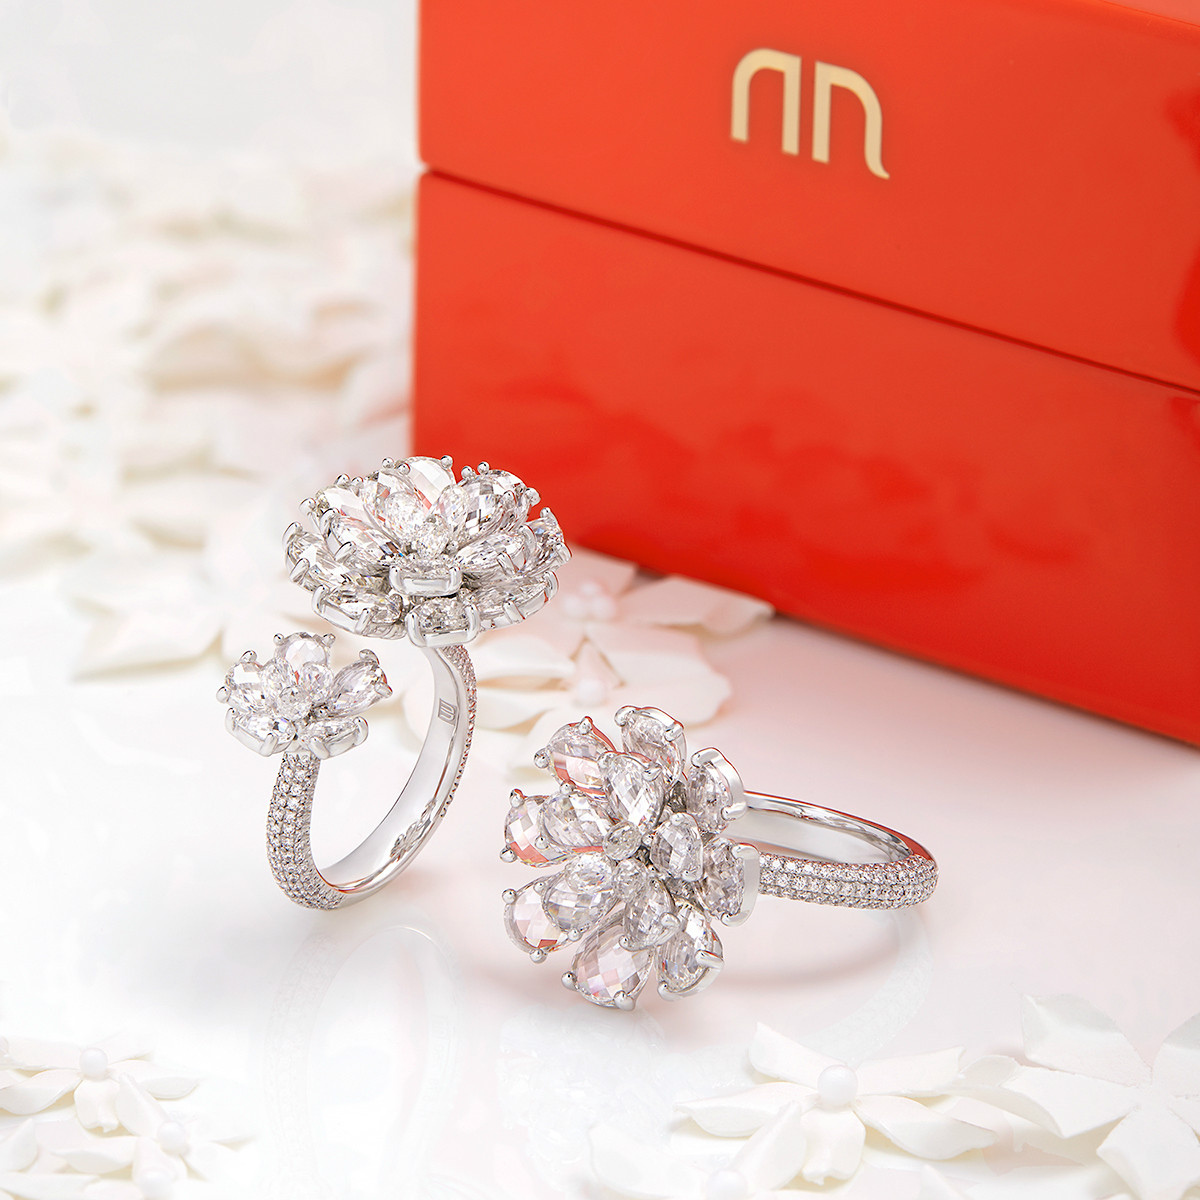 國際高級珠寶品牌NIRAV MODI以創新的珠寶設計和精湛的工藝而聞名，並於全球取得重大的成功。